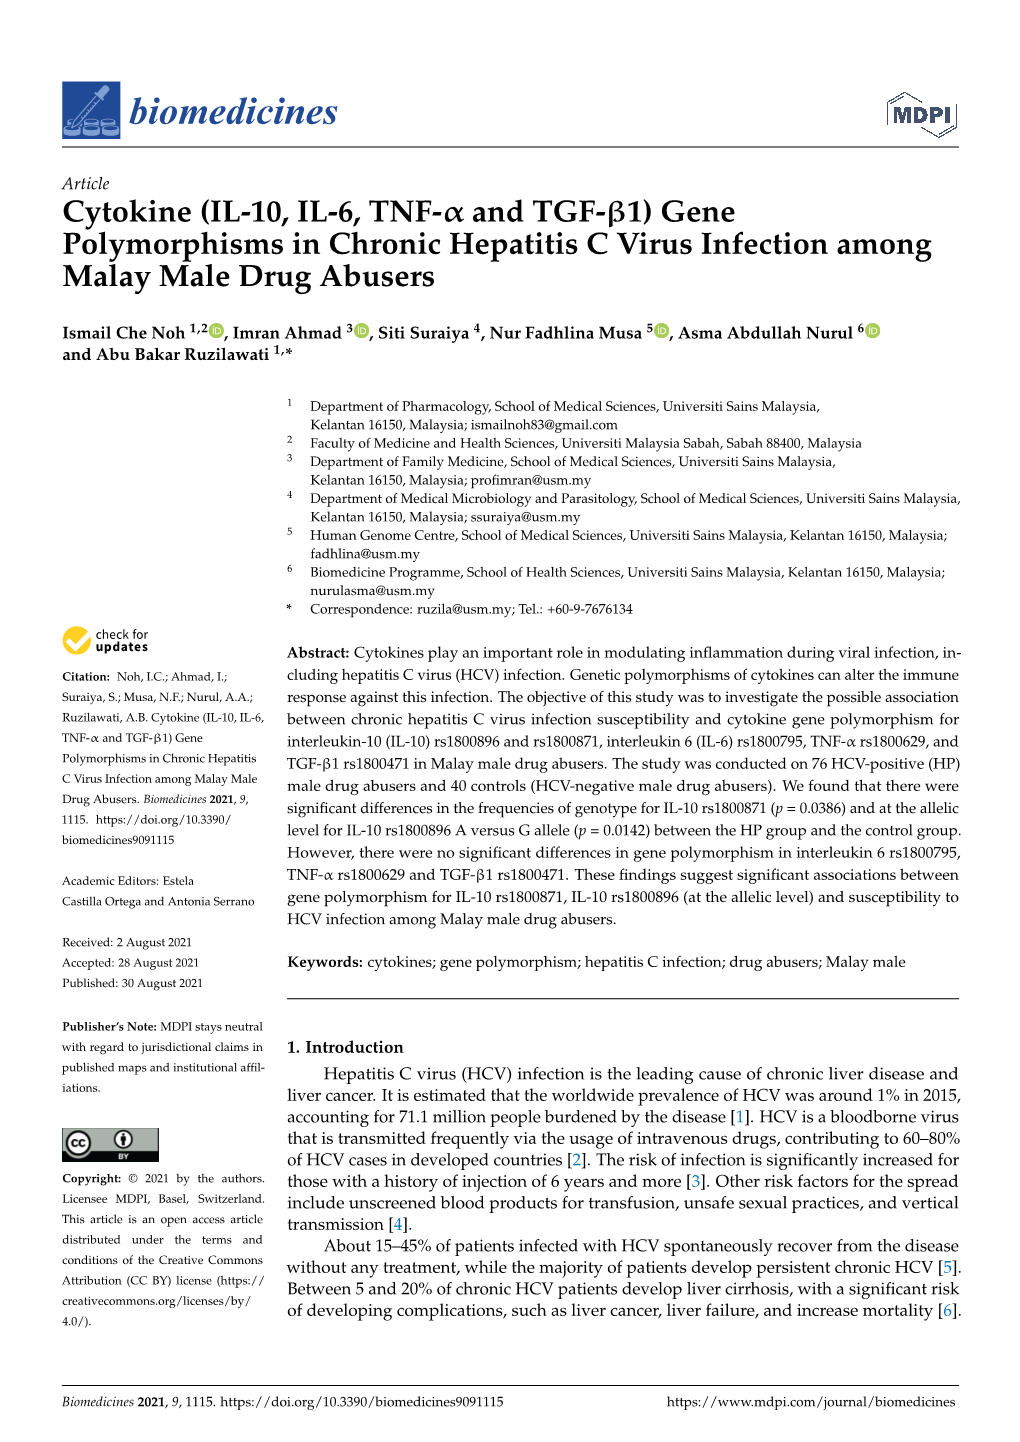 (IL-10, IL-6, TNF-Α and TGF-Β1) Gene Polymorphisms in Chronic Hepatitis C Virus Infection Among Malay Male Drug Abusers